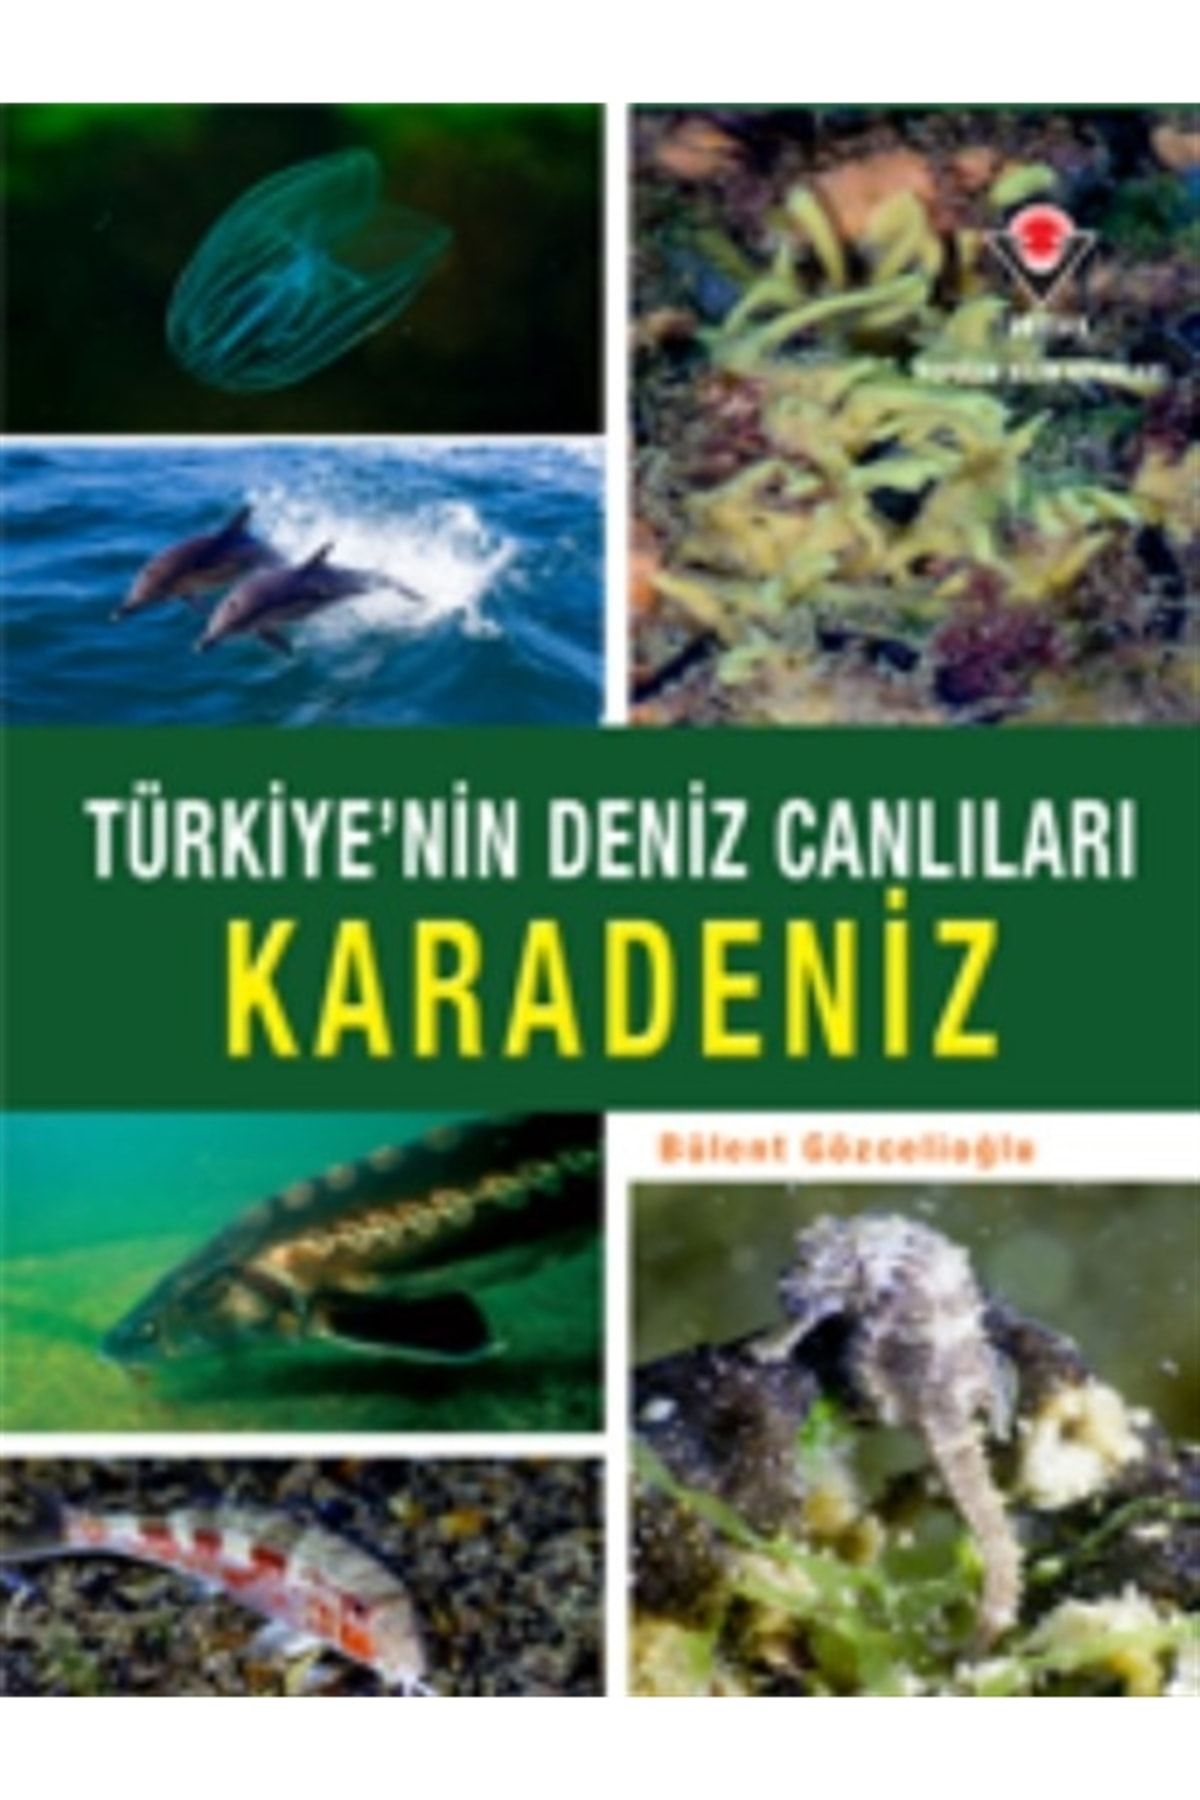 Tübitak Yayınları Karadeniz - Türkiye'nin Deniz Canlıları (ciltli) - - Bülent Gözcelioğlu Kitabı